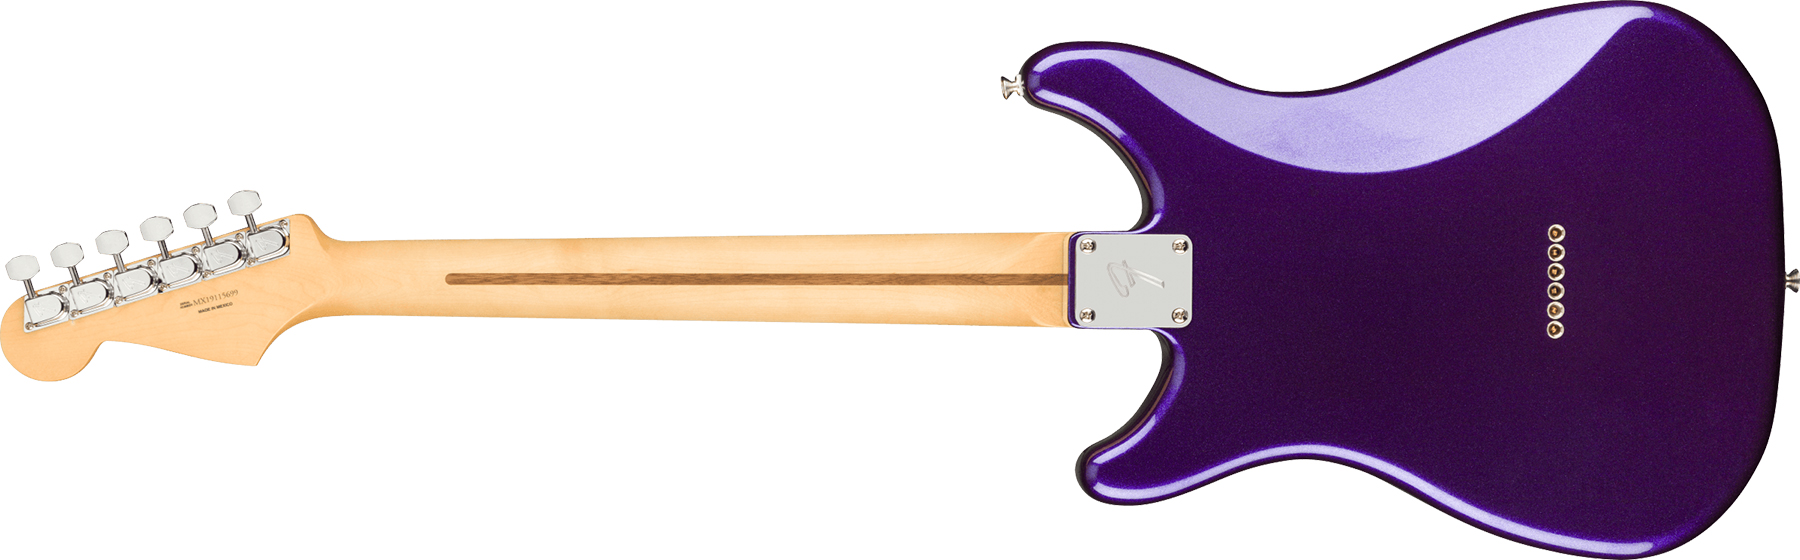 Fender Lead Iii Player Mex Hh Ht Pf - Metallic Purple - Guitare Électrique Forme Str - Variation 1